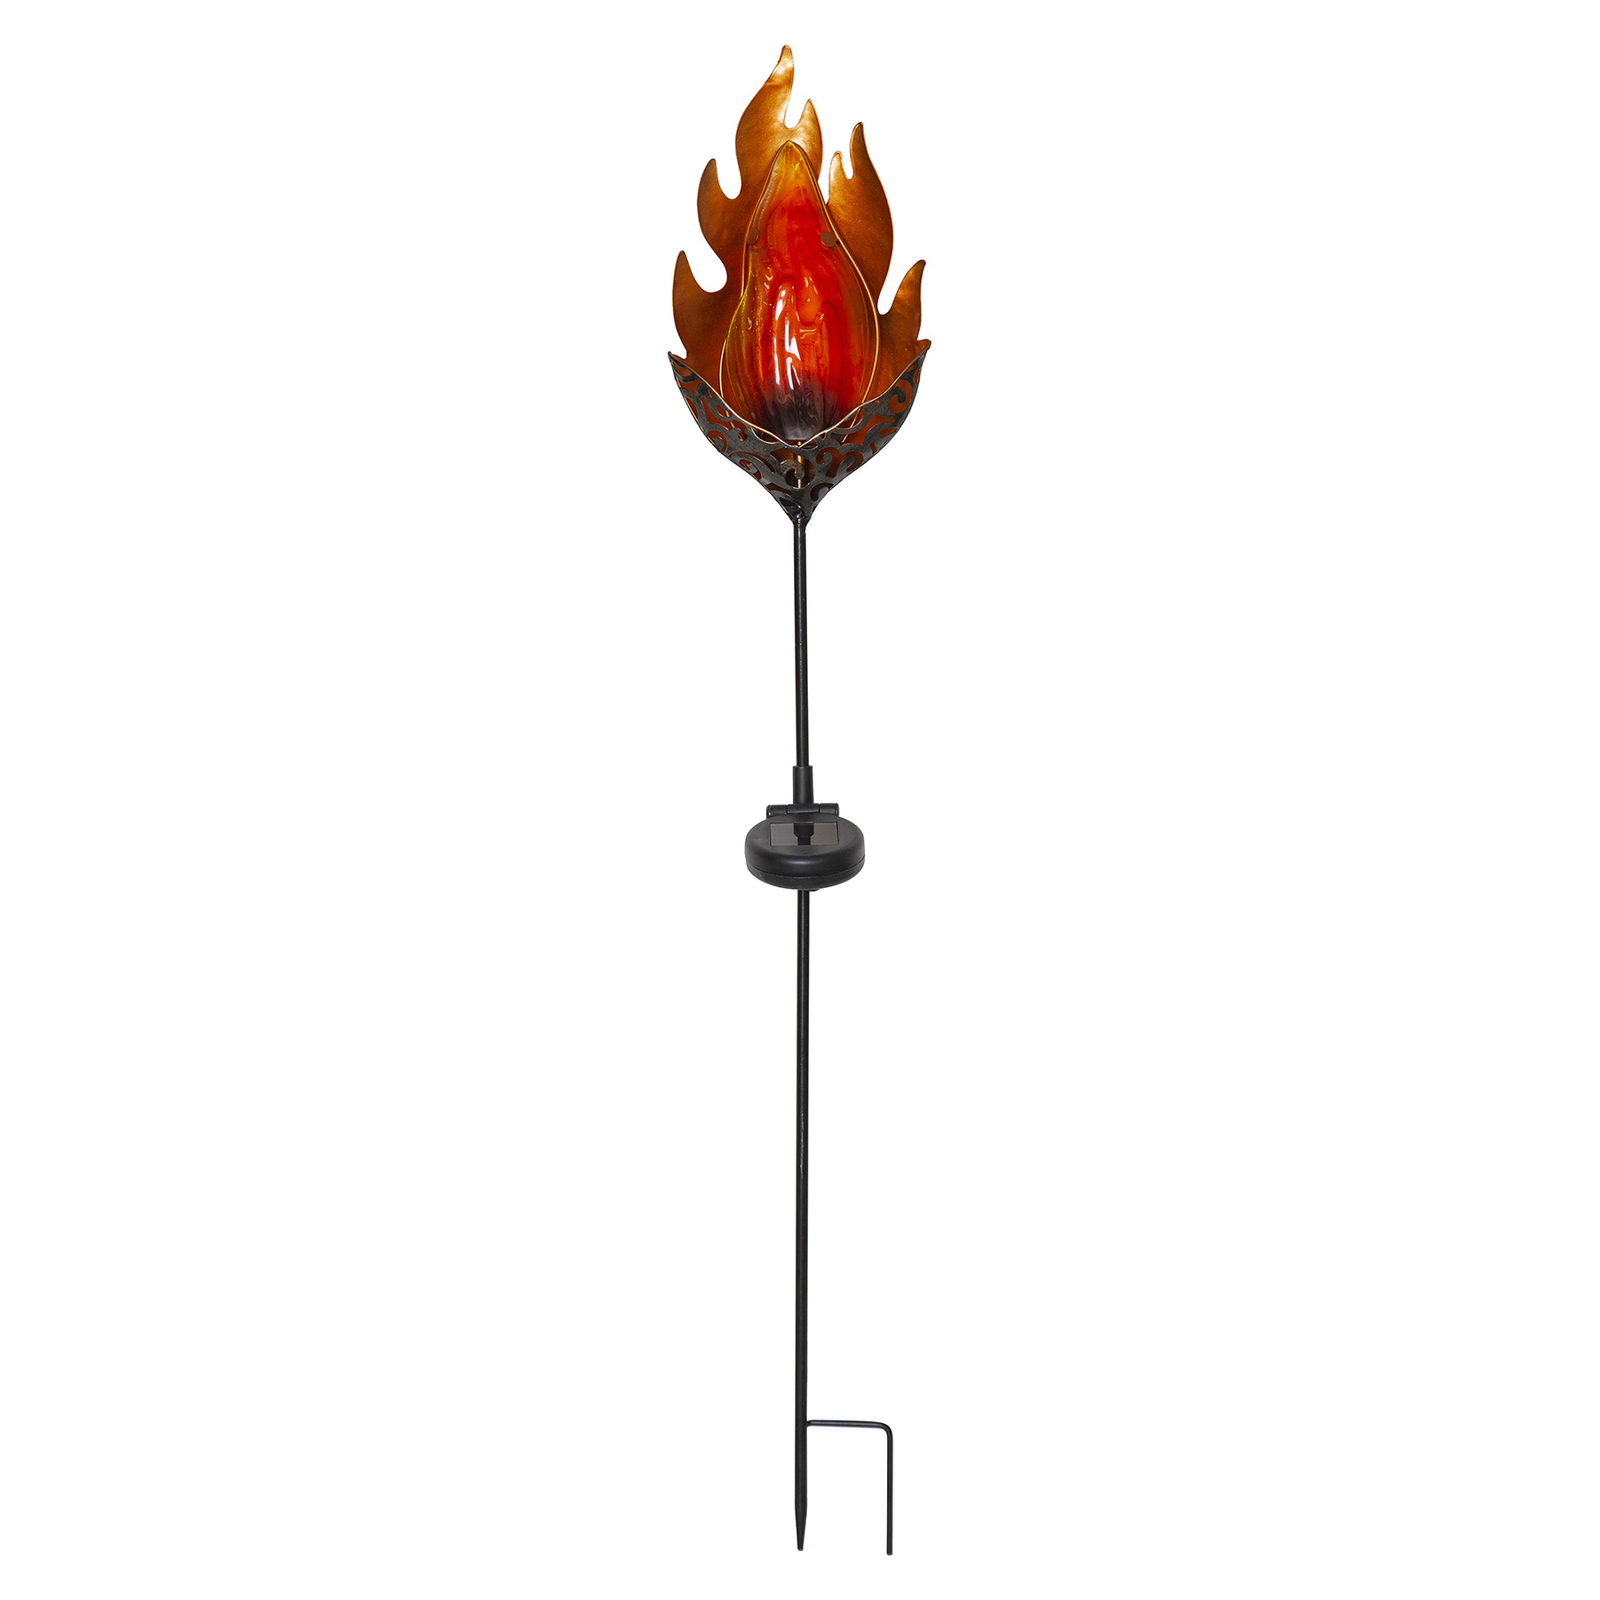 LED solarlamp Melilla Flame in vlammen-vorm